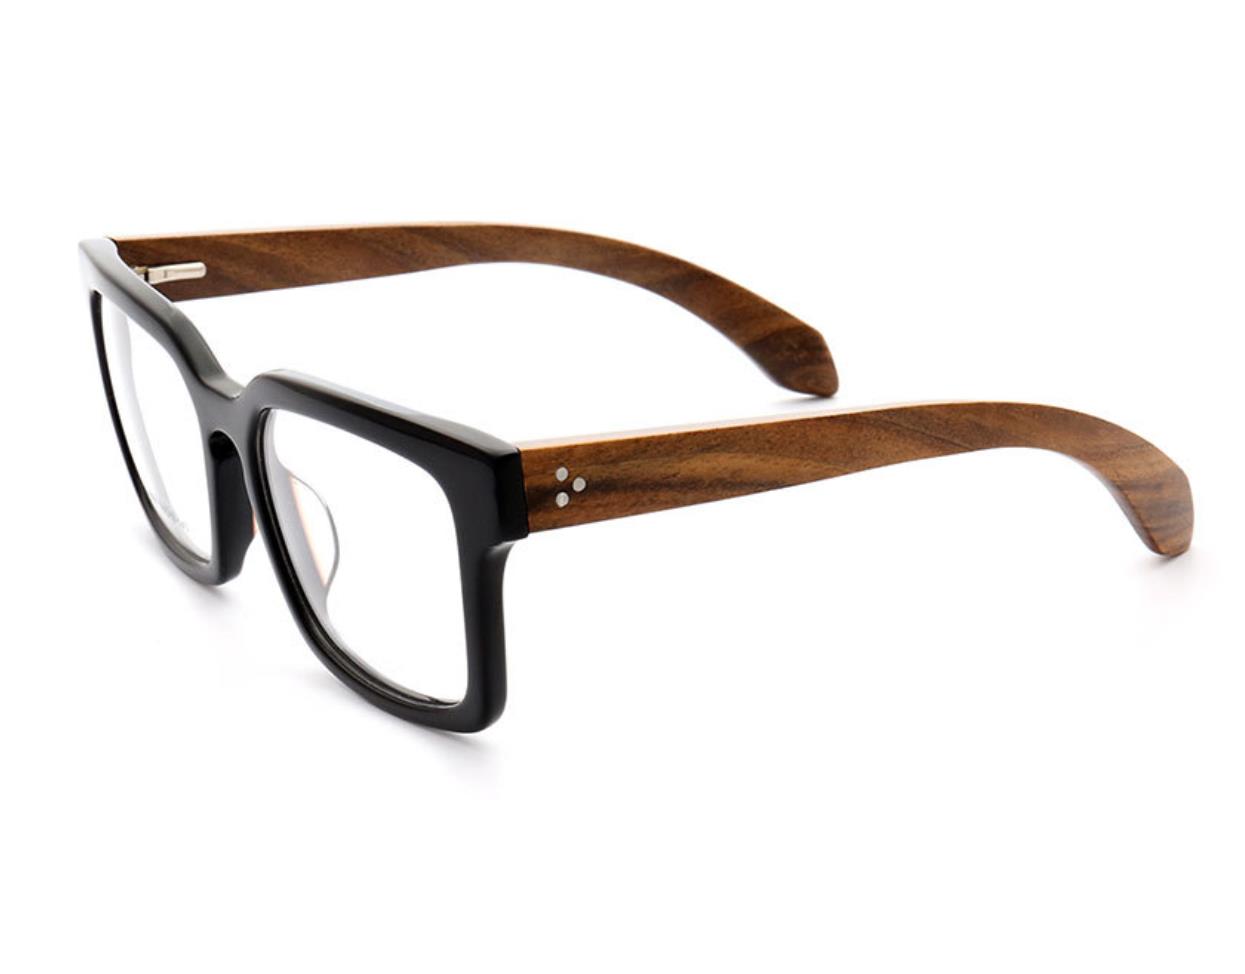 A pair of oversized full rim wooden eyeglass frames